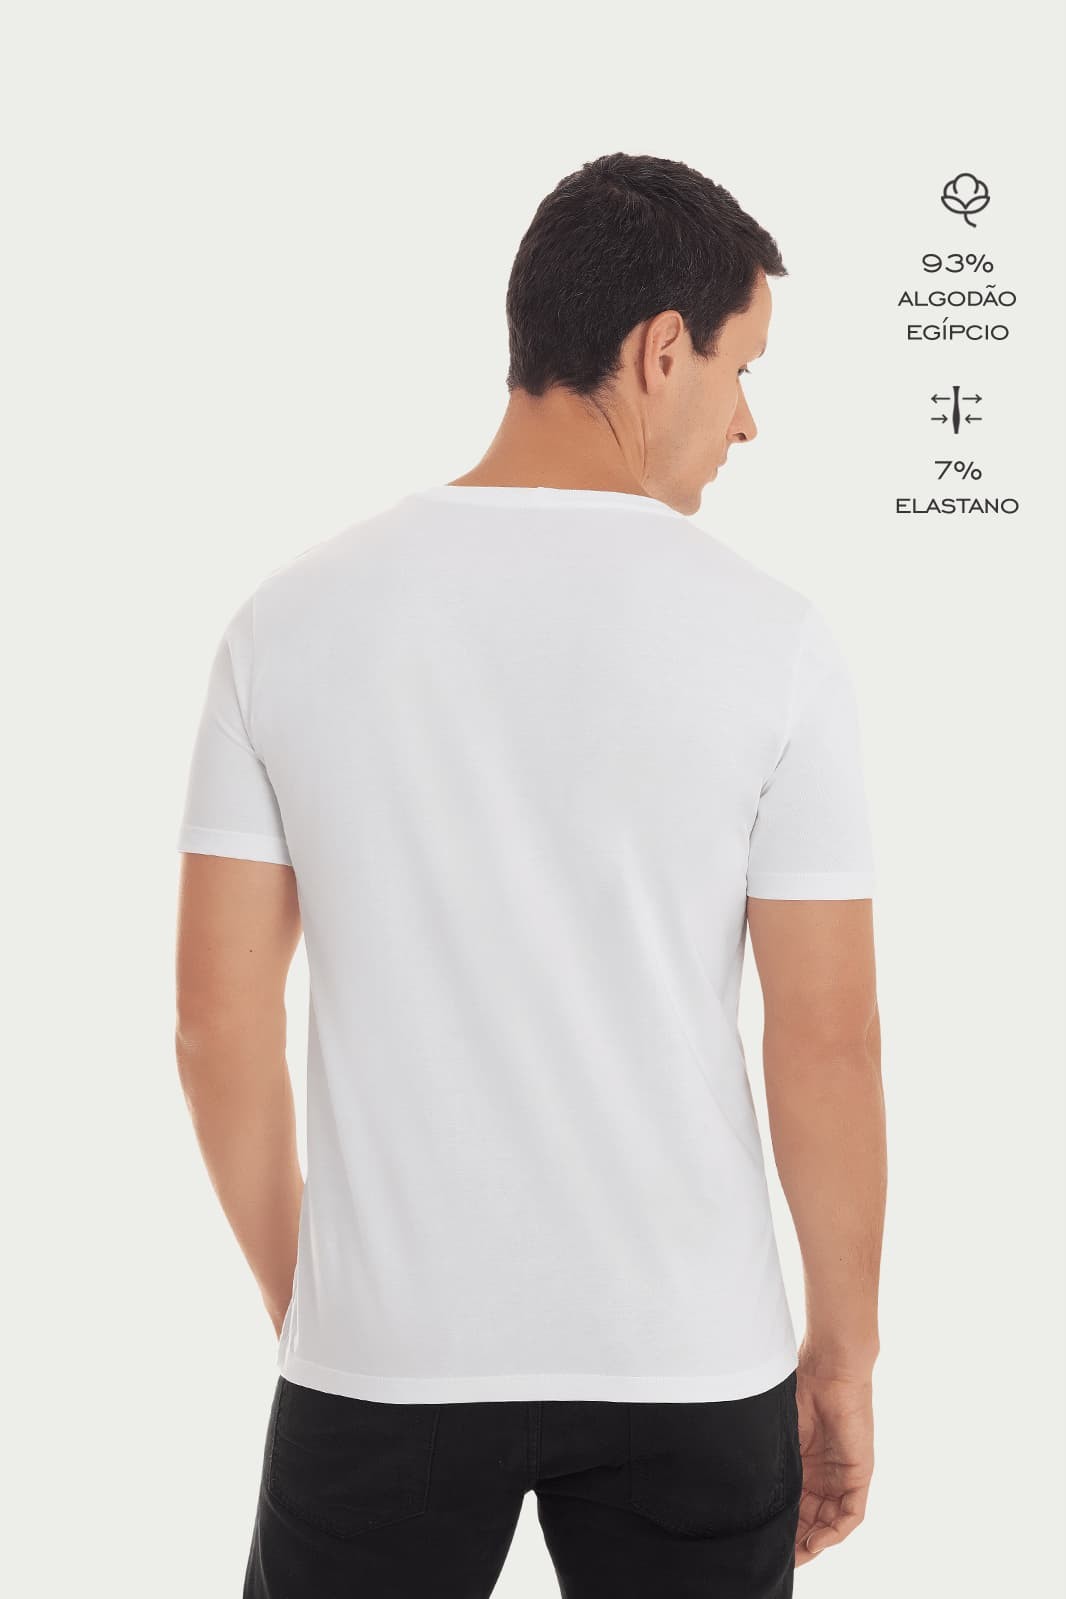 Kit Camiseta Básica Algodão Egípcio Gola V com 3 cores